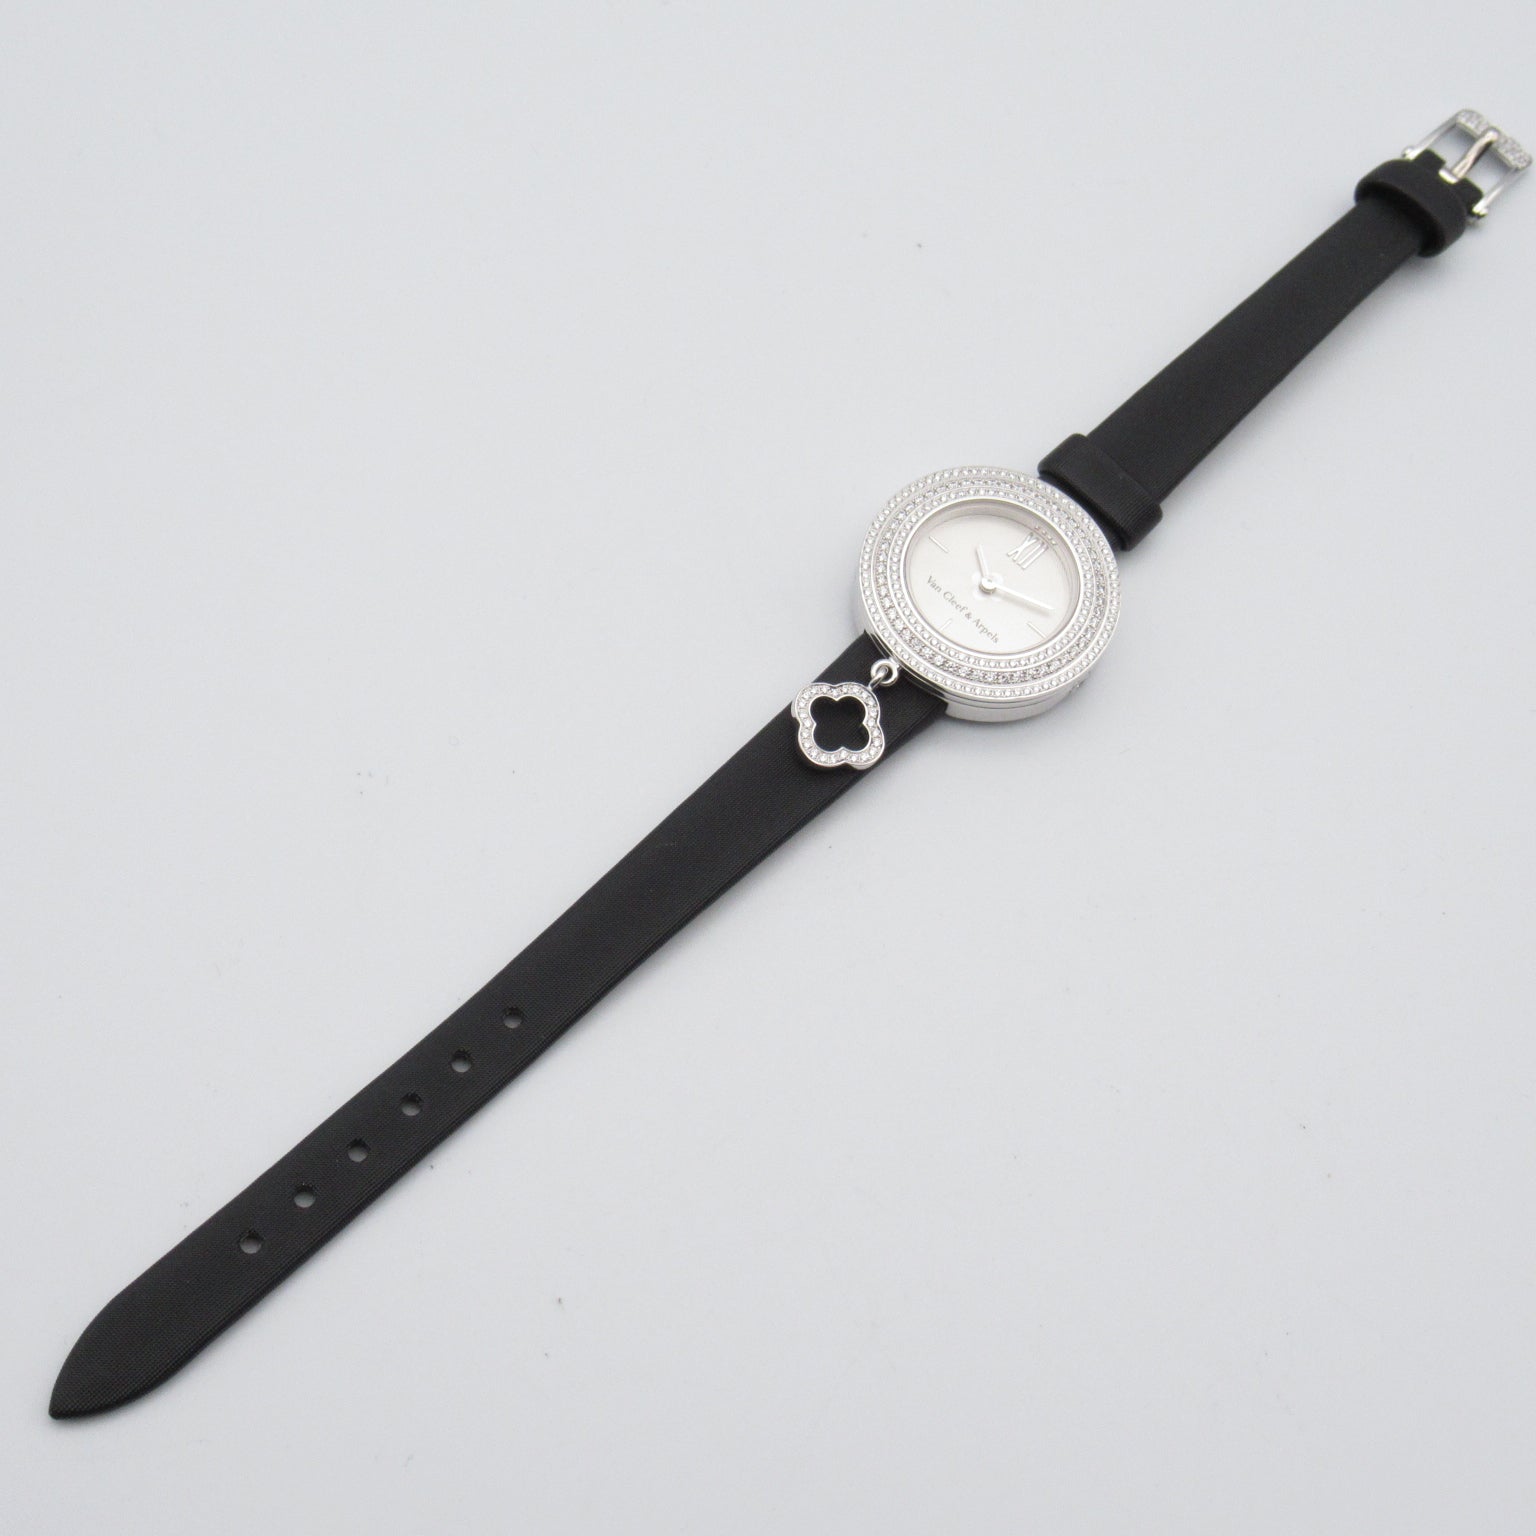 Van Cleef & Arpels Van Cleef & Arpels Charm Mini Watch Watch K18WG (White G) Leather Belt  Silver  VCARO29900